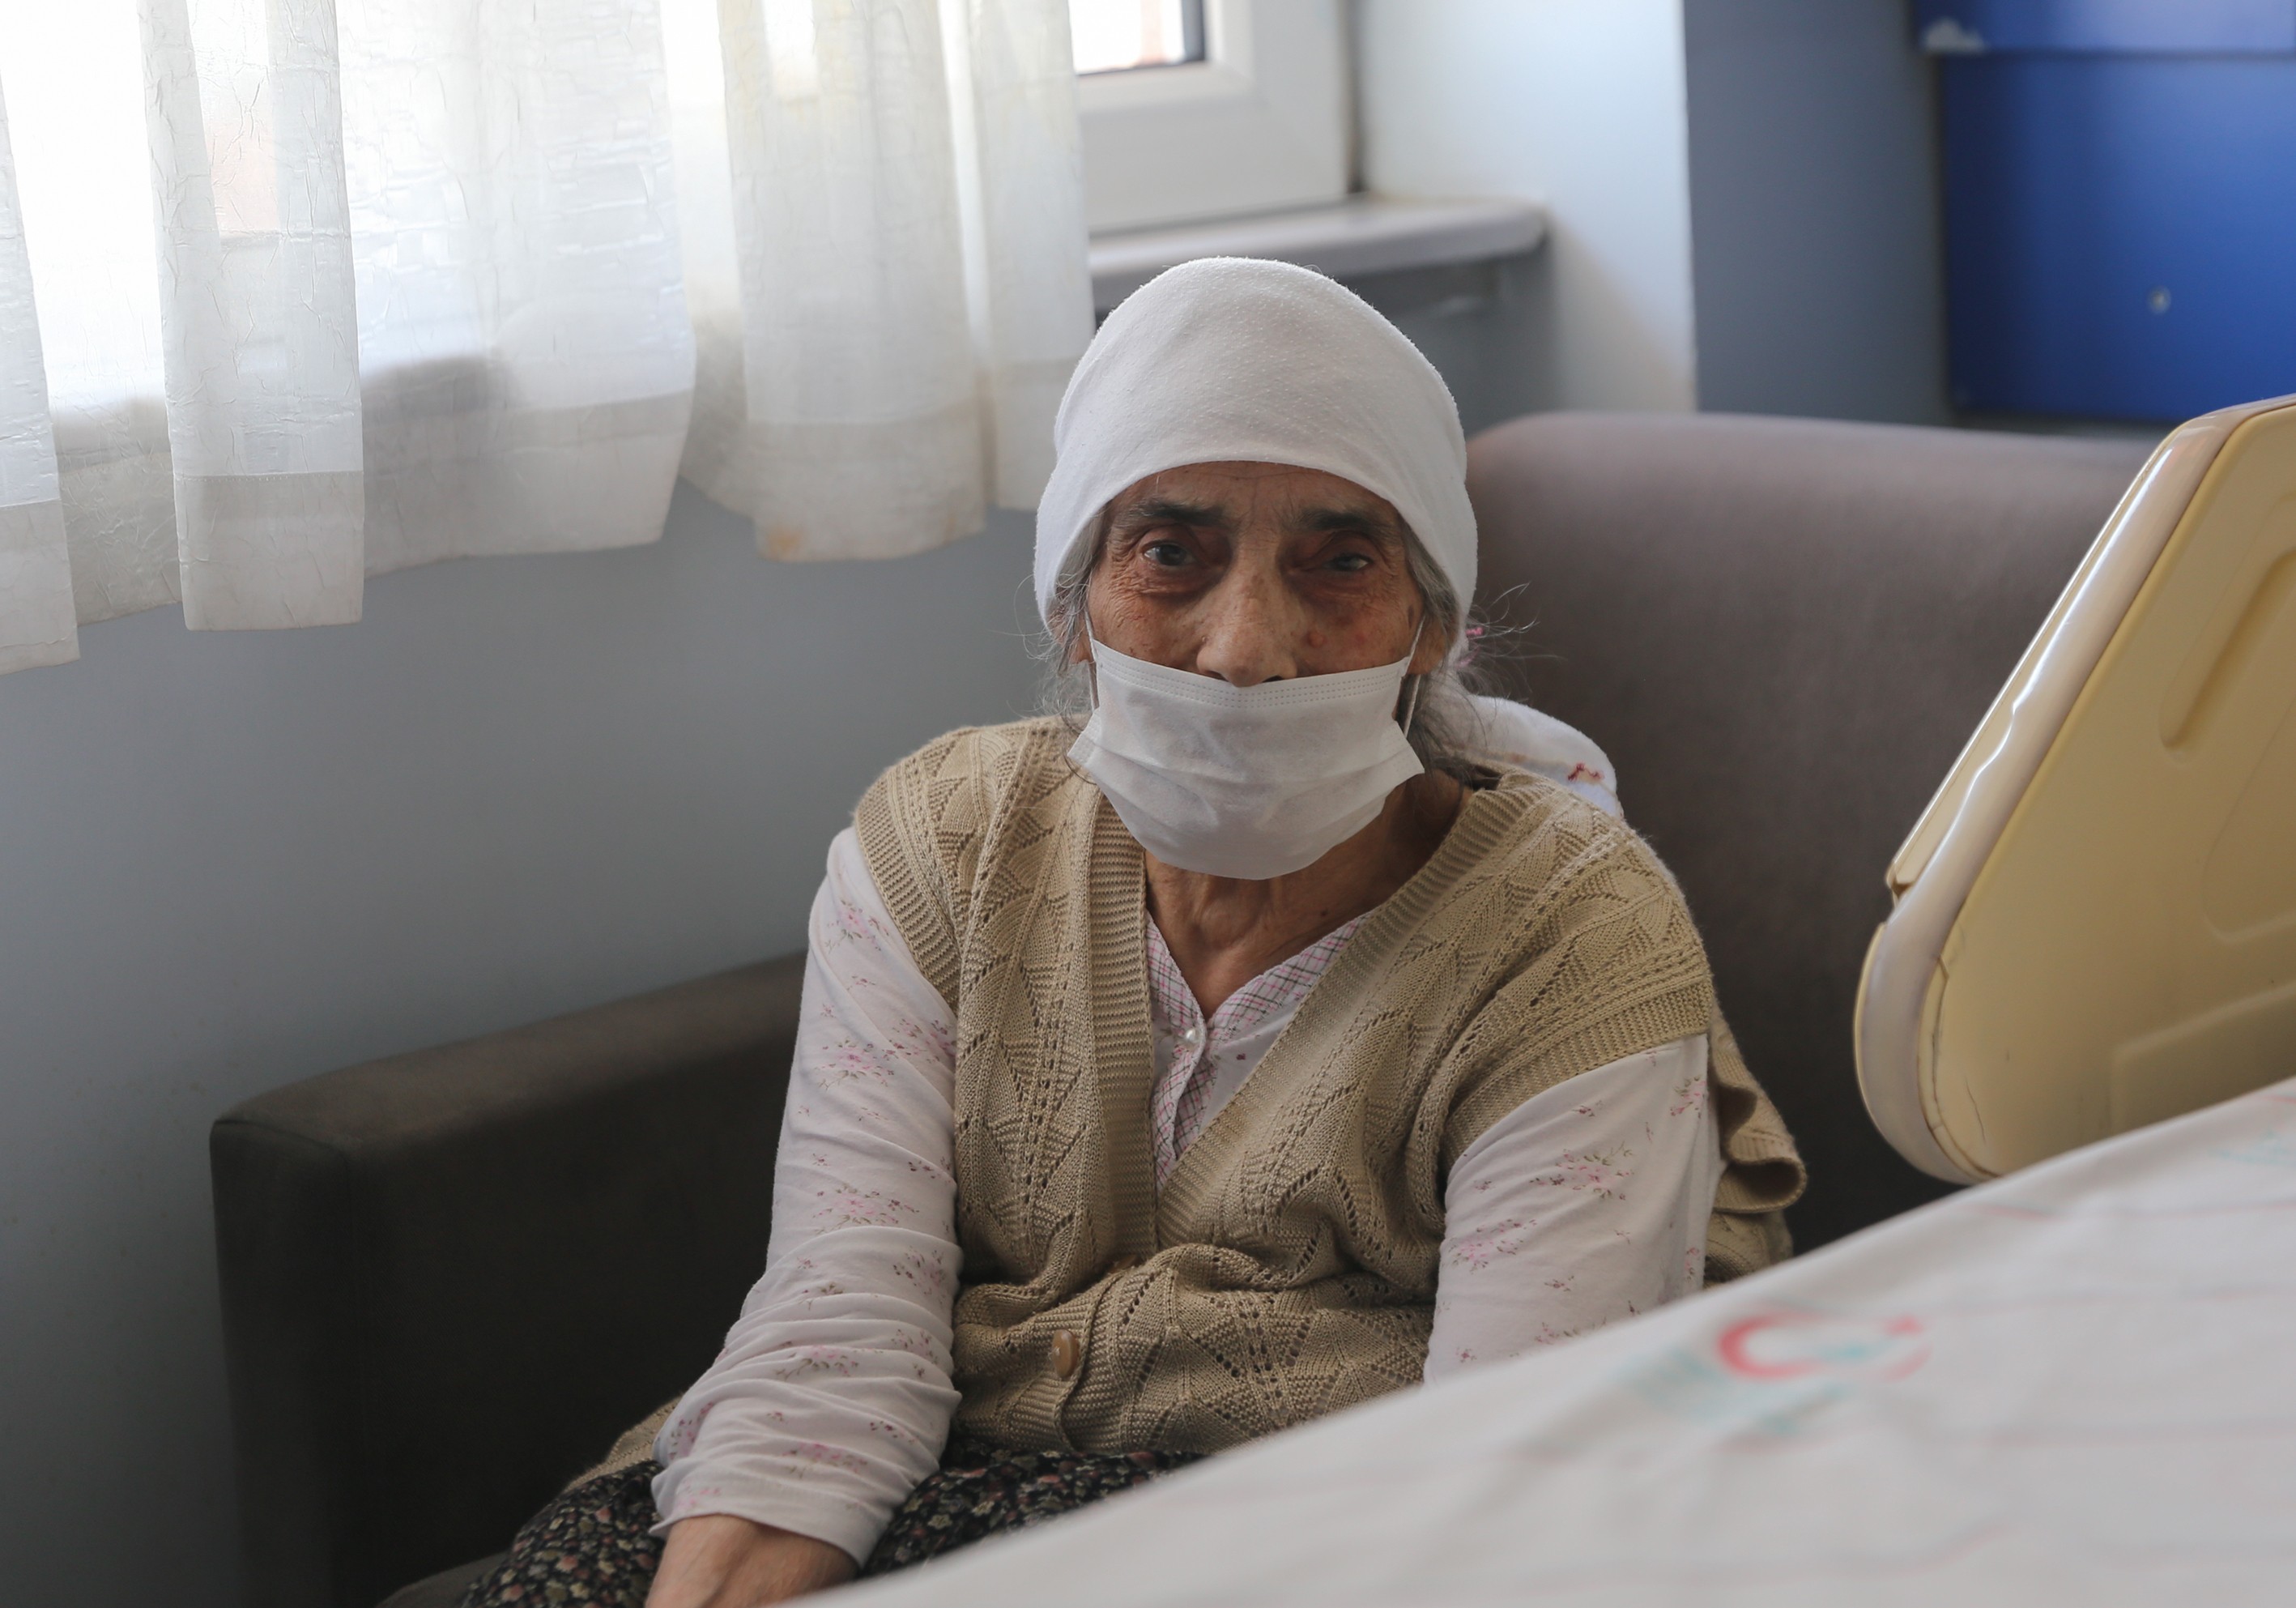 Havahan Karadeniz é a mais velha do mundo a se curar do novo coronavírus (Foto: Getty Images)